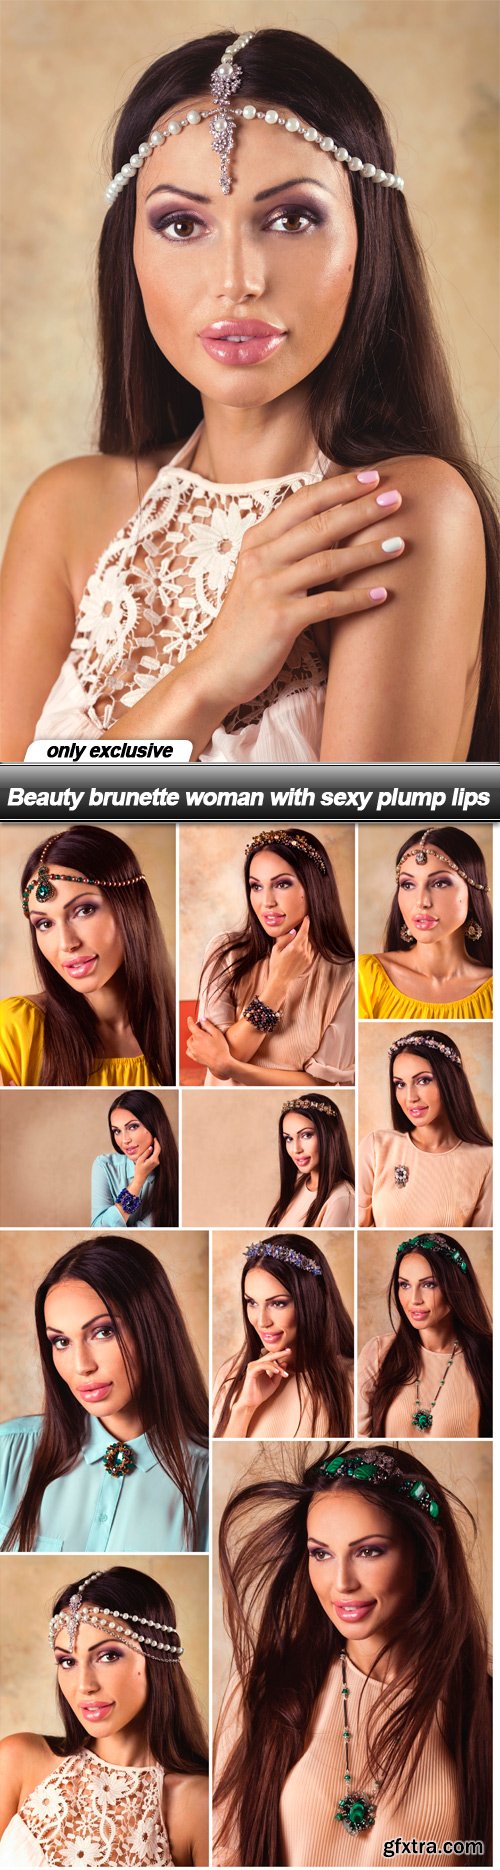 Beauty brunette woman with sexy plump lips - 12 UHQ JPEG